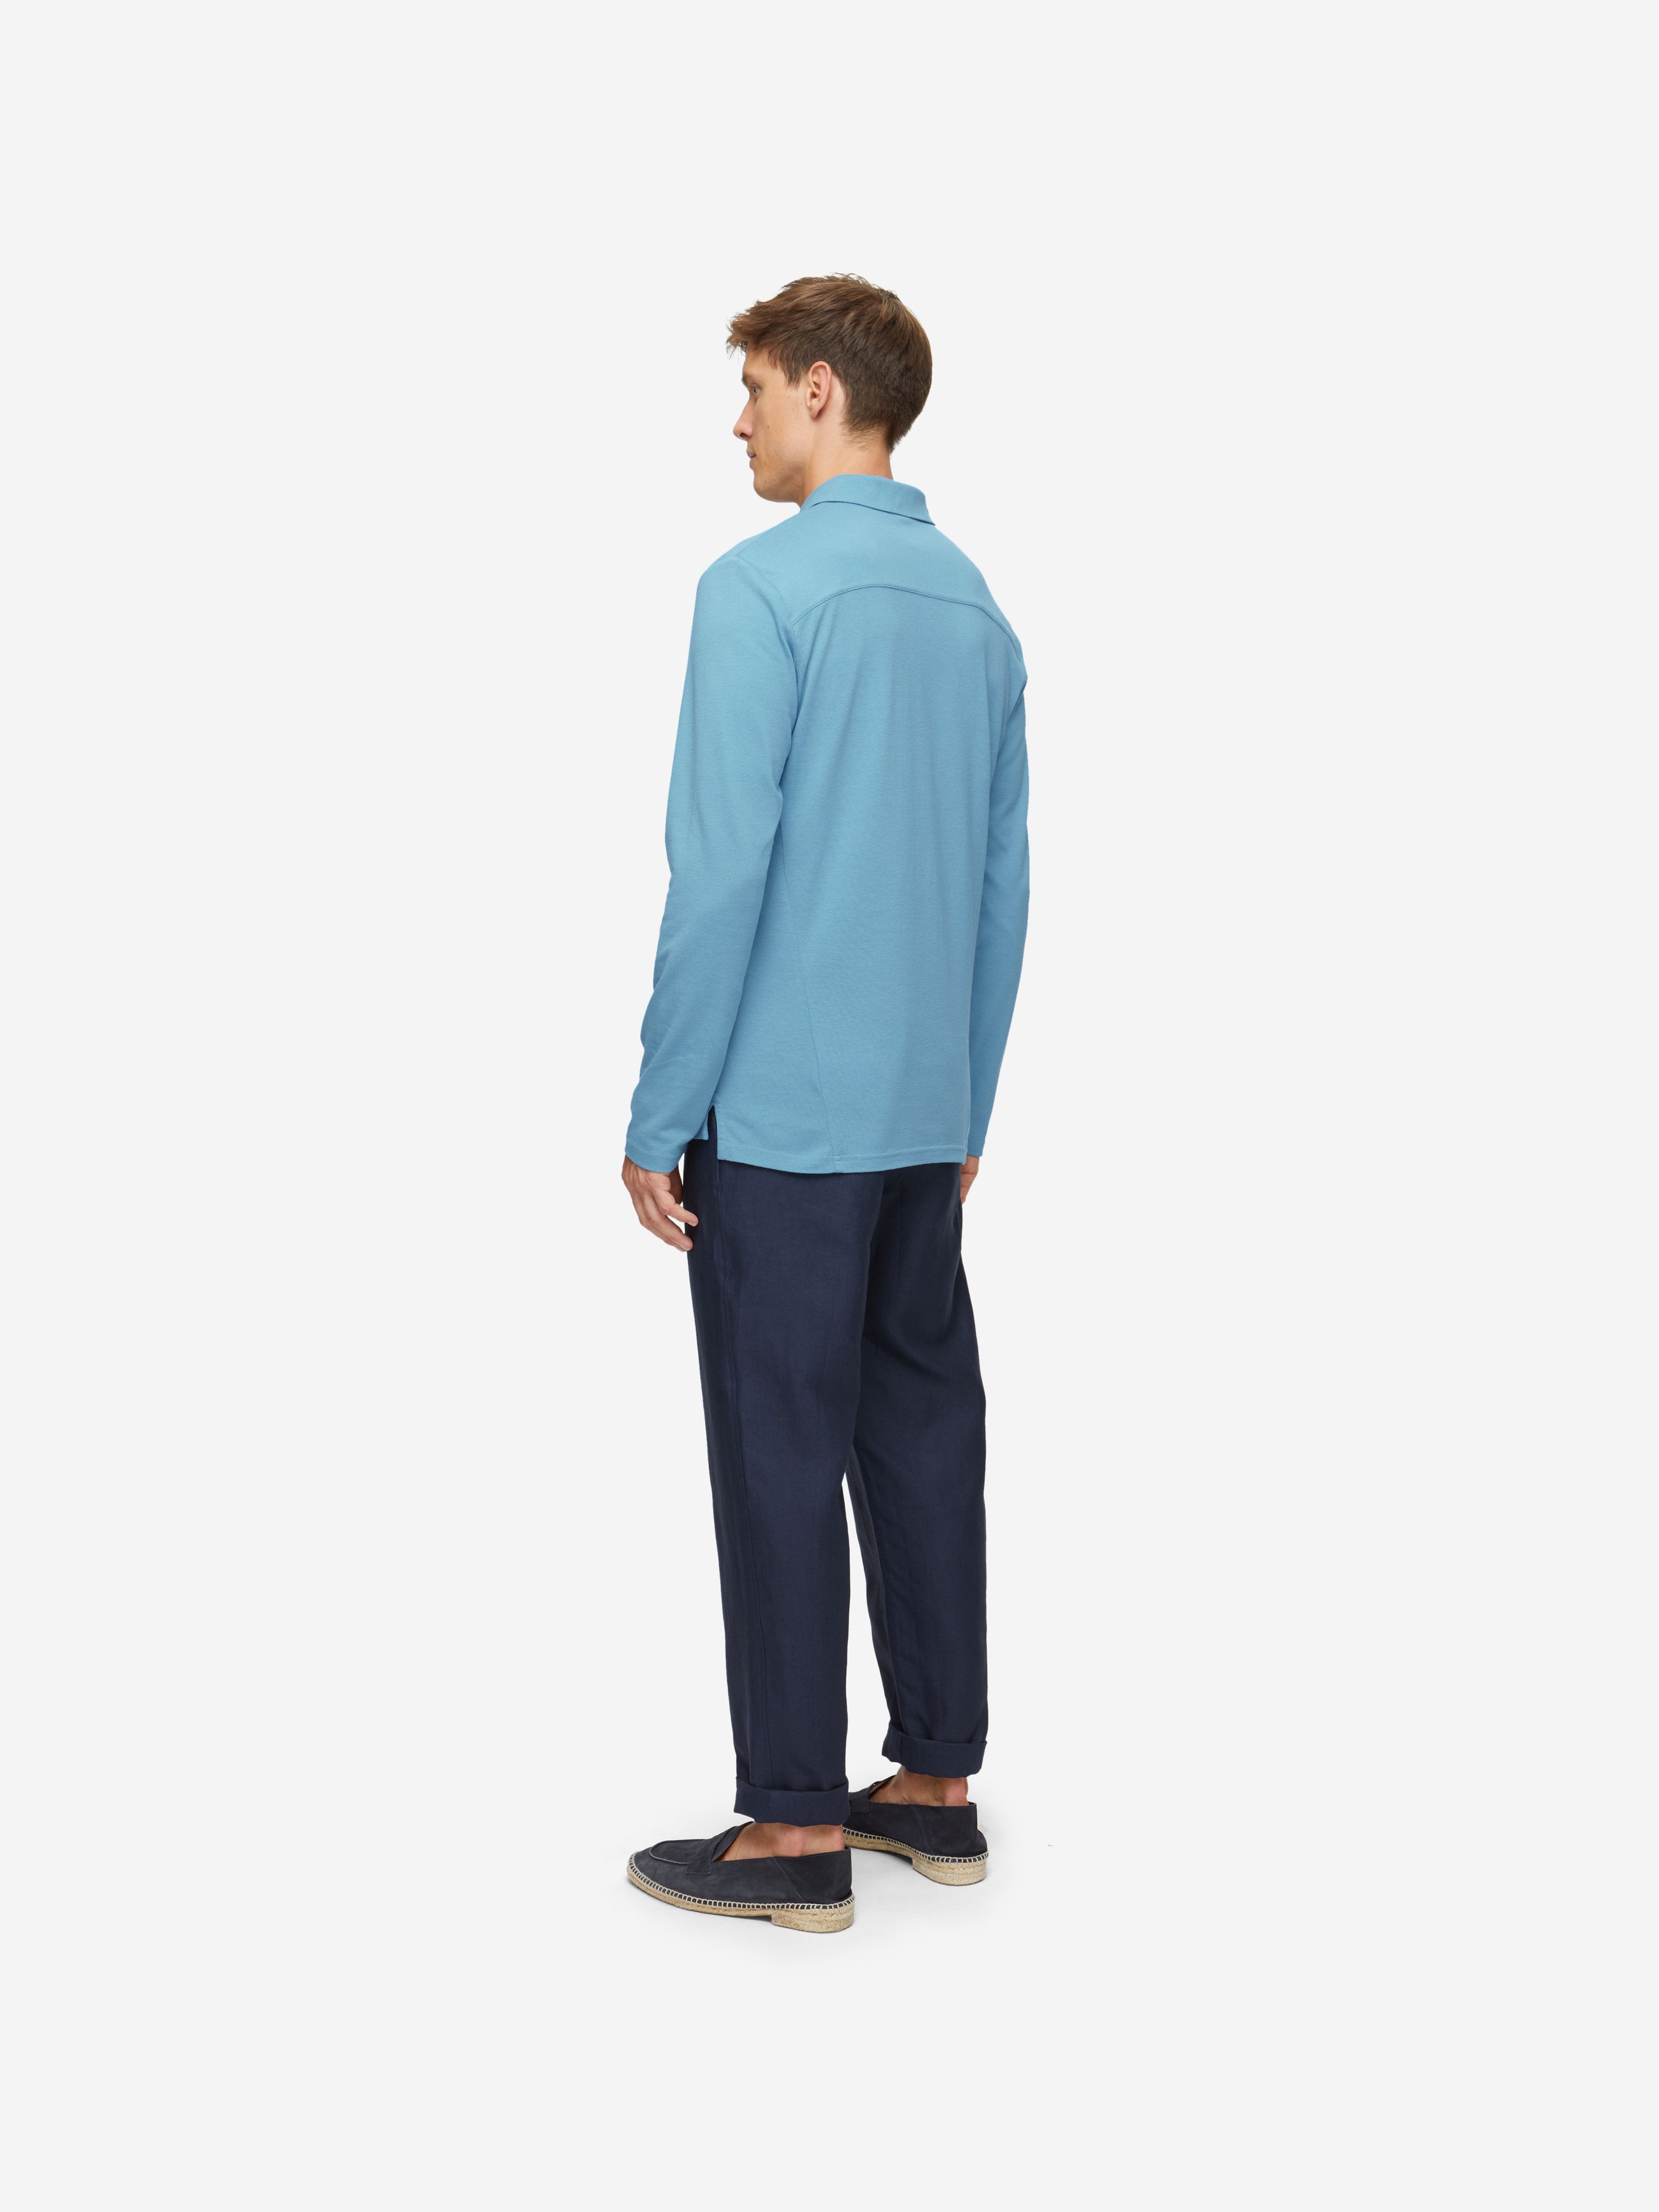 Men's Long Sleeve Polo Shirt Ramsay 4 Pique Cotton Tencel Blue